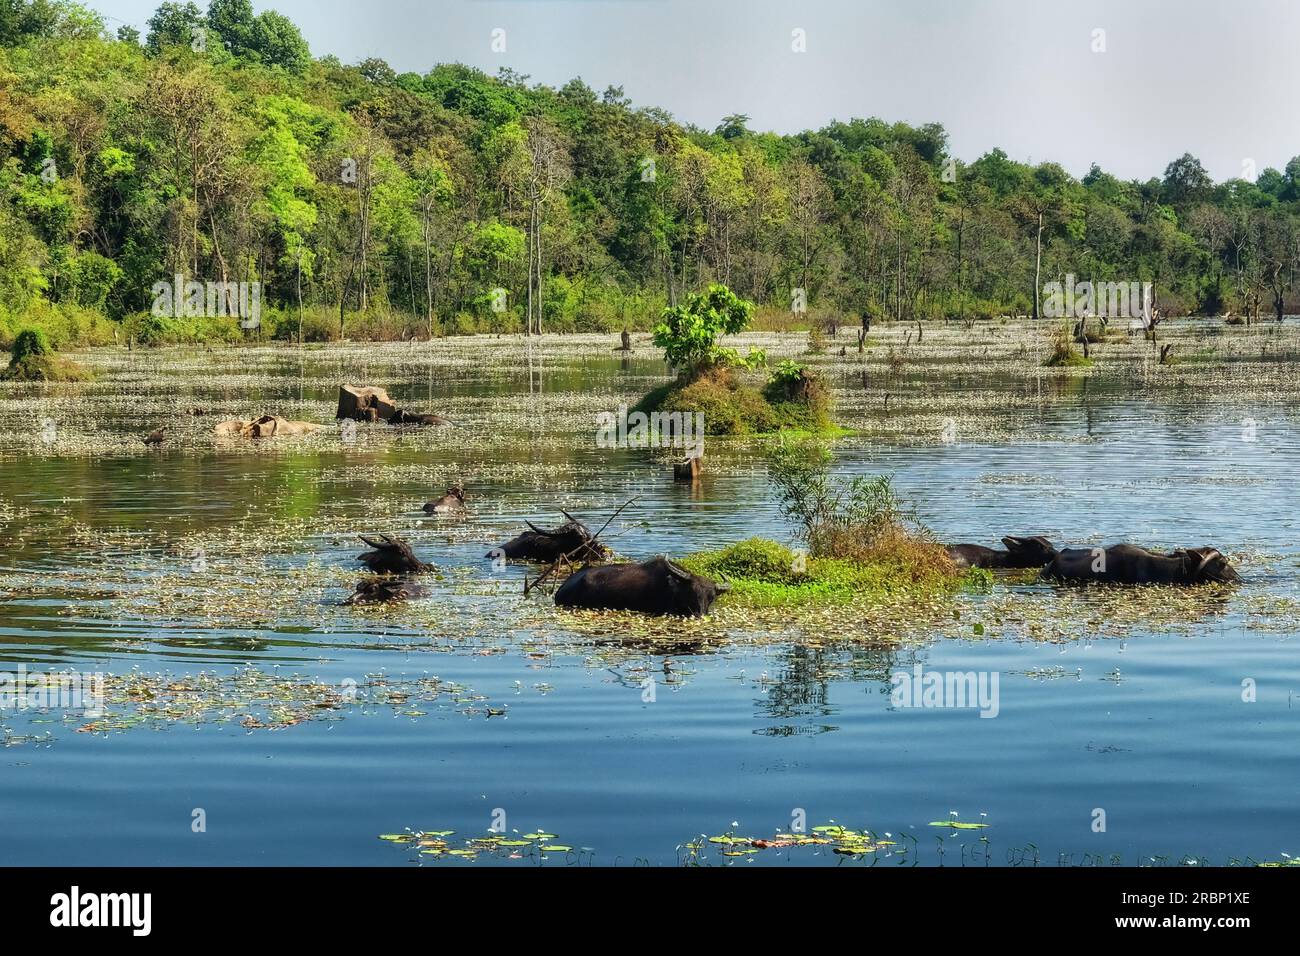 Fotografieren Sie eine Ansammlung von Wasserbüffeln inmitten eines seichten sumpfigen Sees in Kambodscha, Landschaftsorientierung. Stockfoto